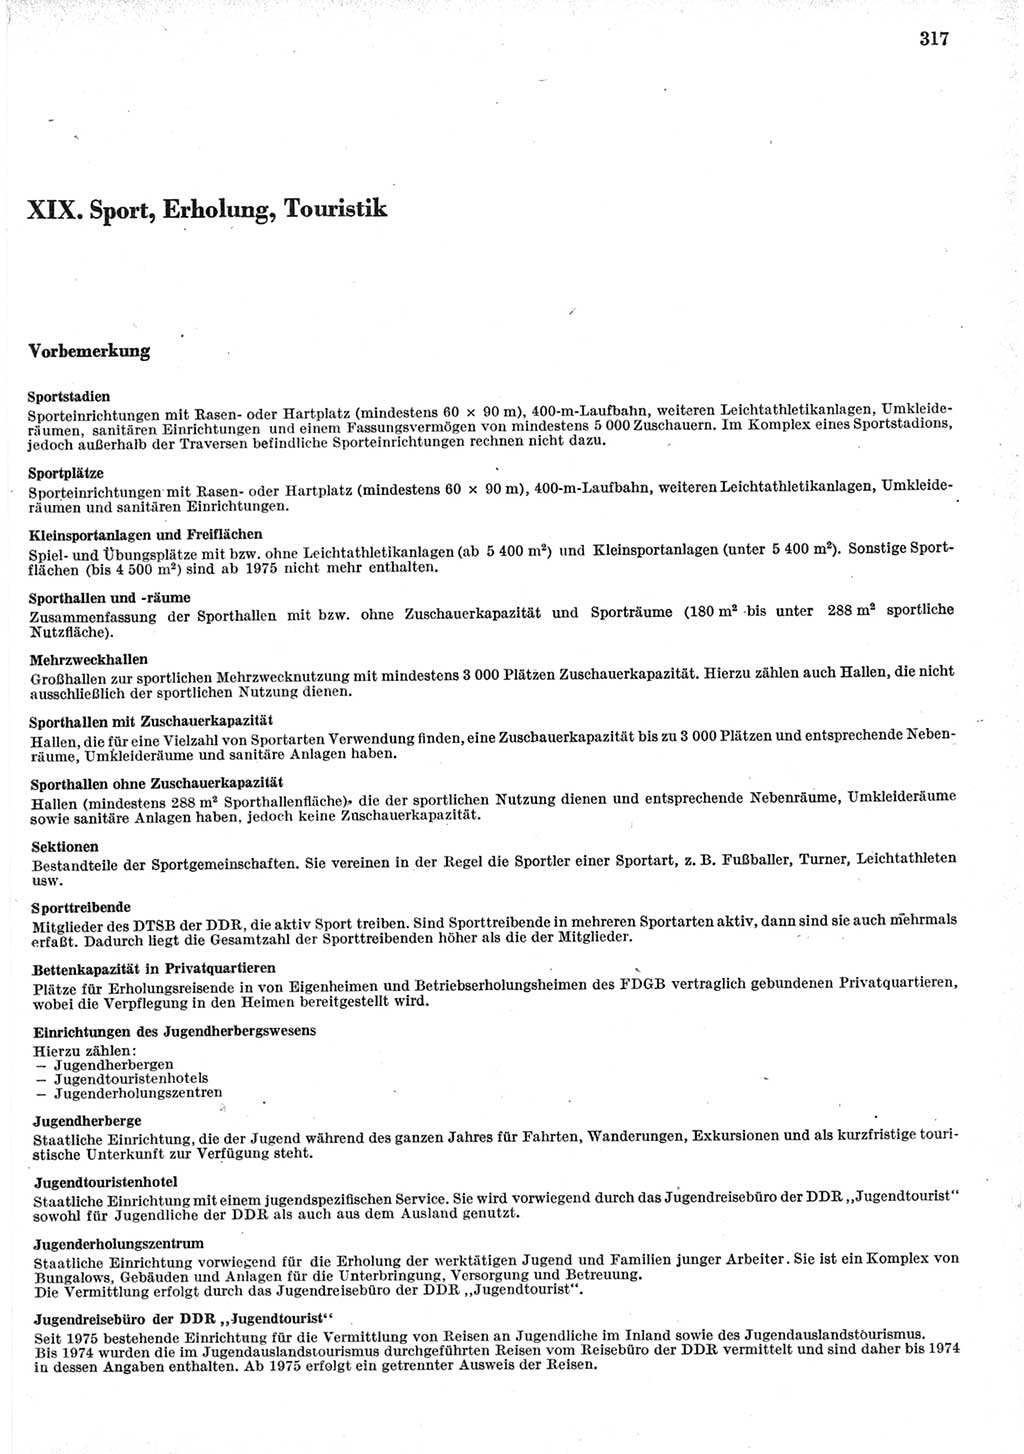 Statistisches Jahrbuch der Deutschen Demokratischen Republik (DDR) 1979, Seite 317 (Stat. Jb. DDR 1979, S. 317)